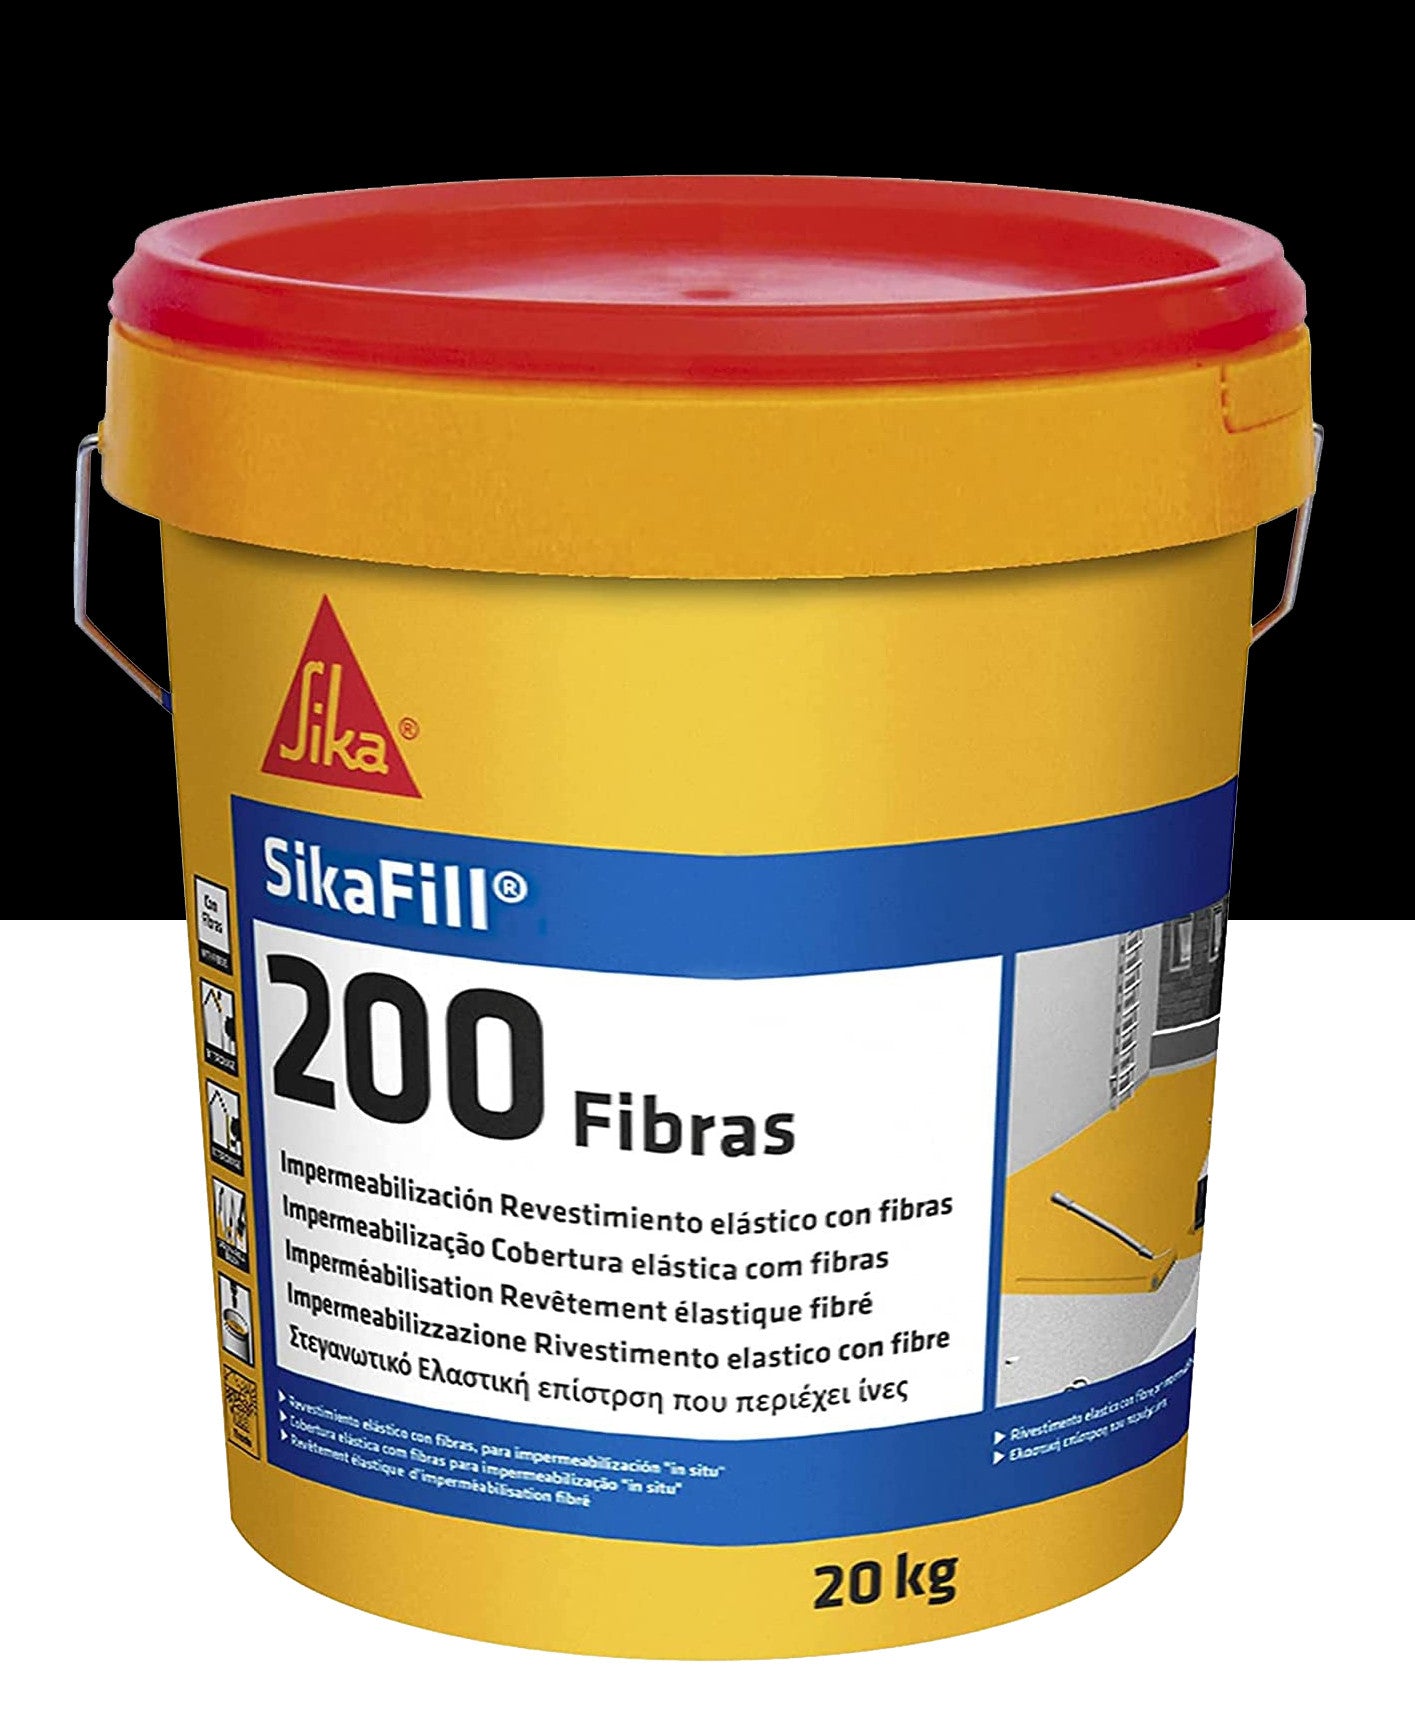 Bote Pintura Impermeable Sikafill-200 Fibras 20kg SIKA - 7